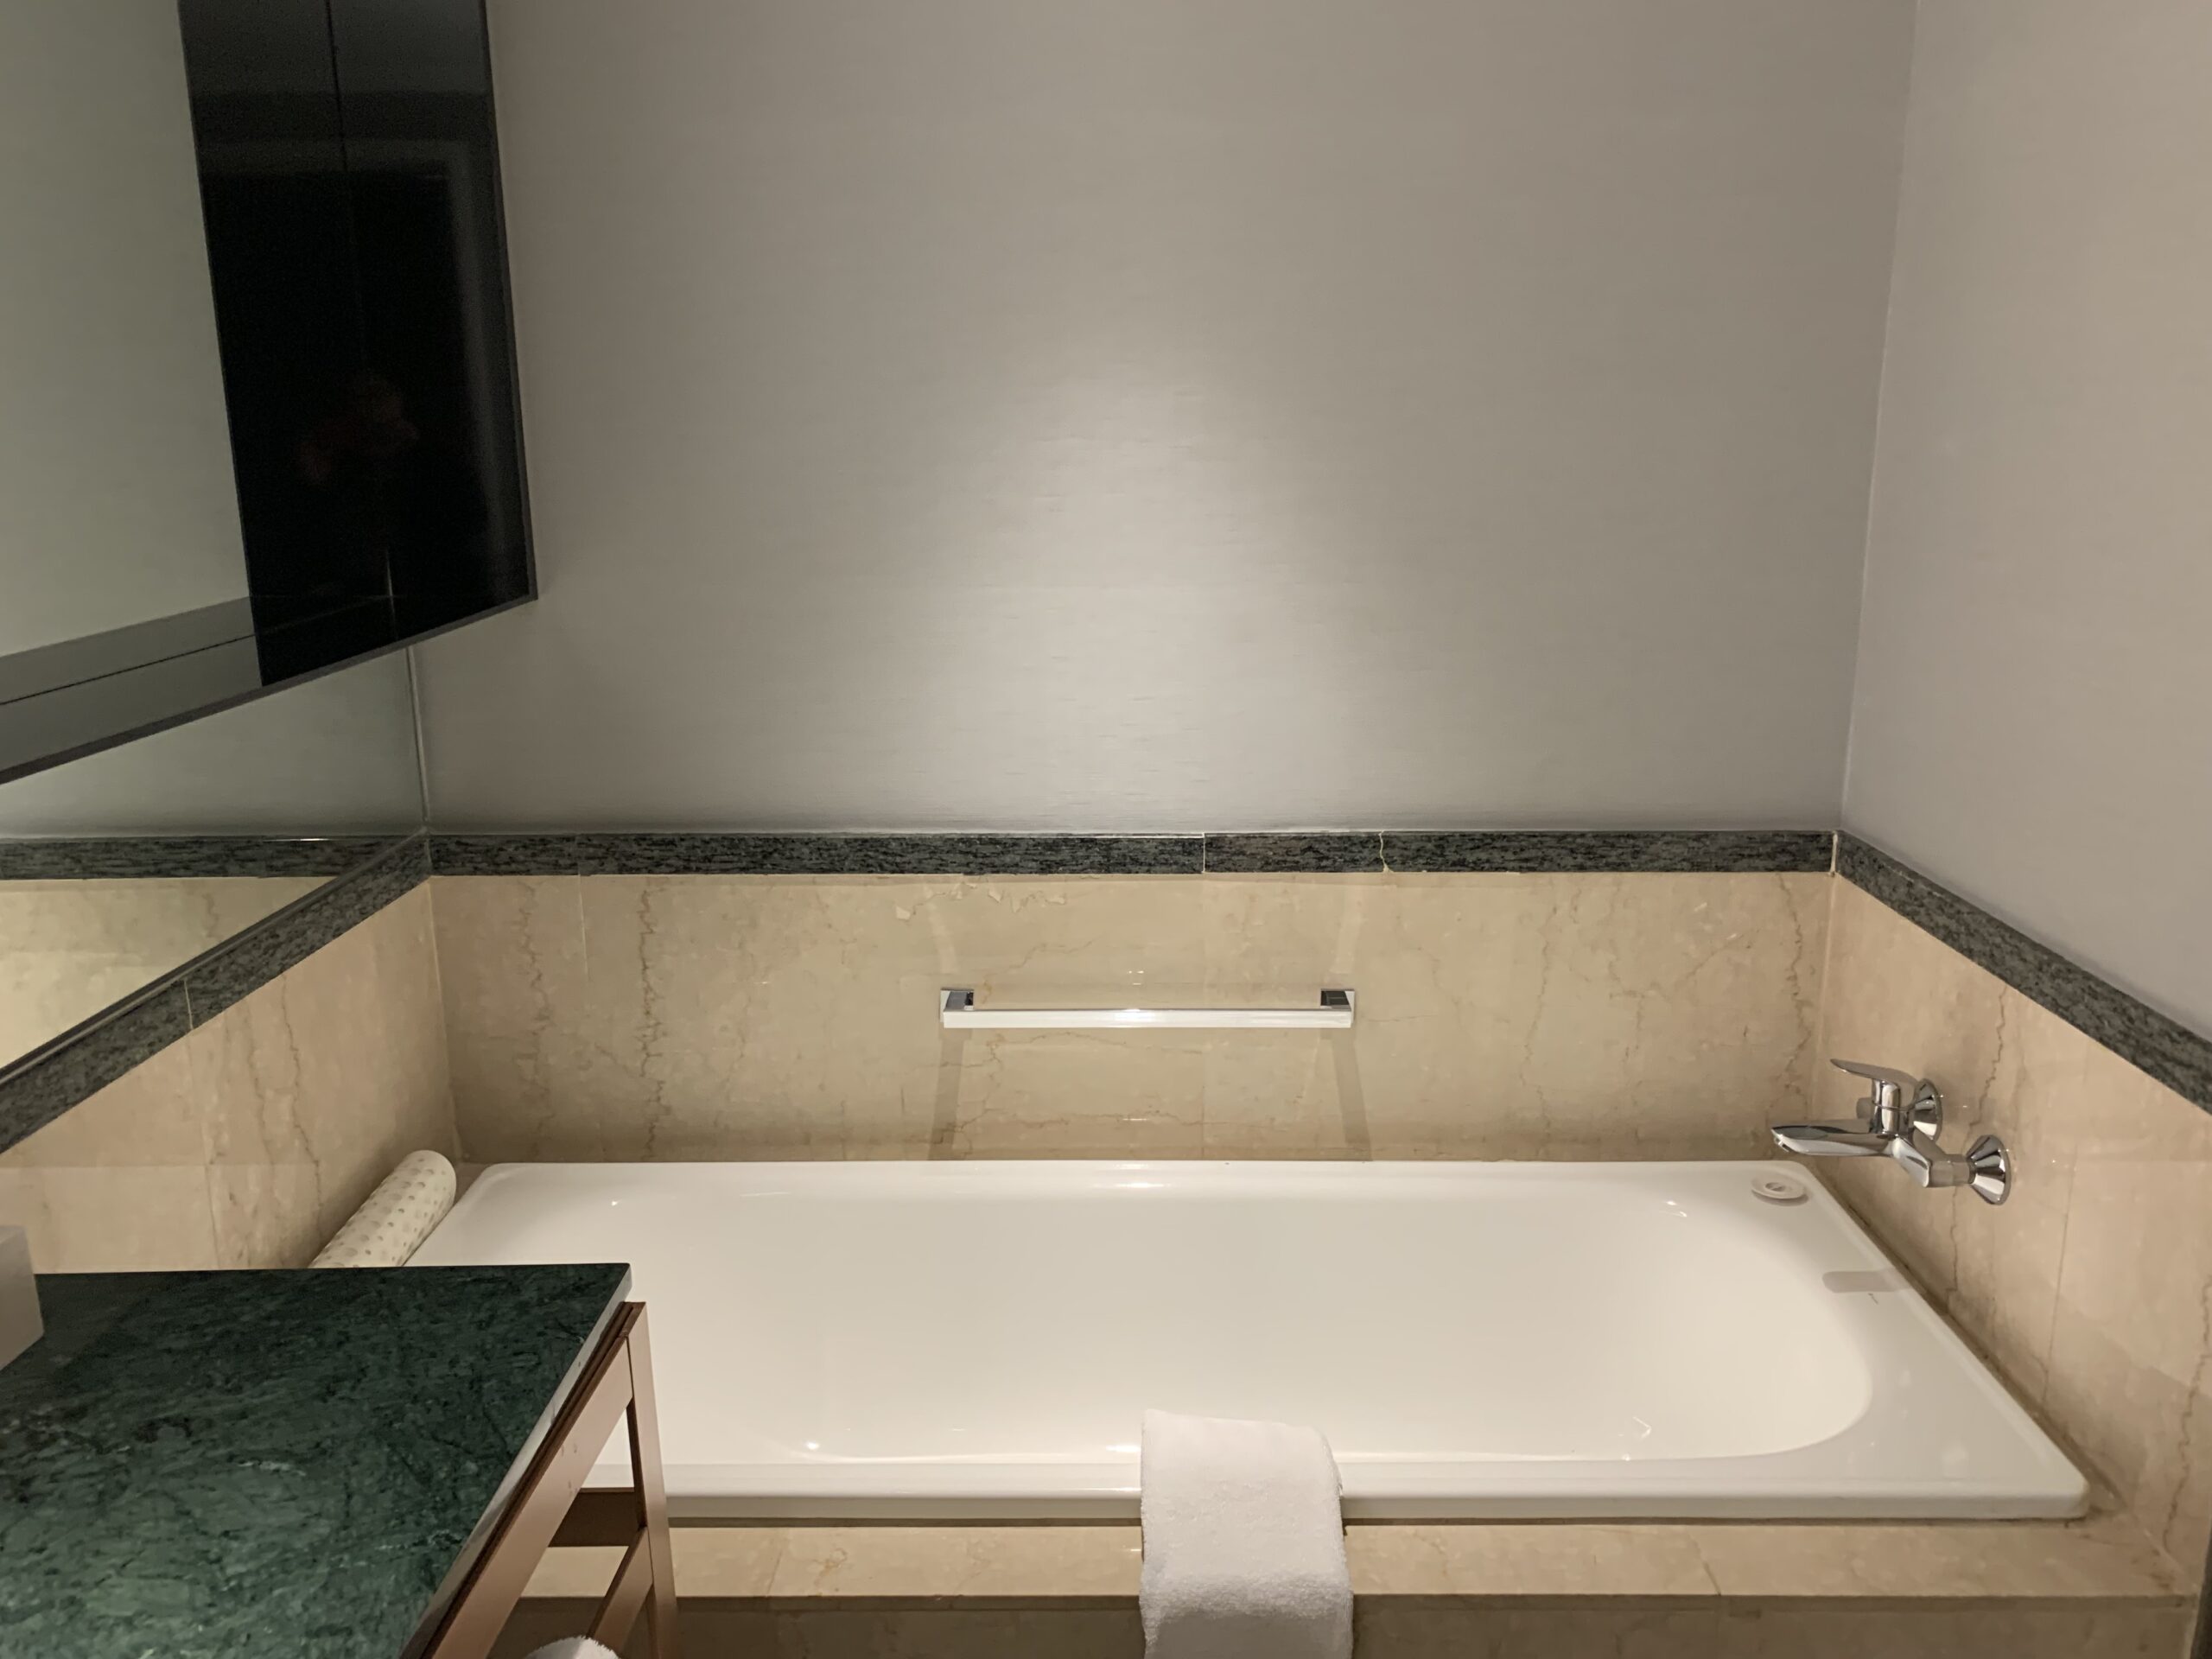 a bathroom with a bathtub and sink